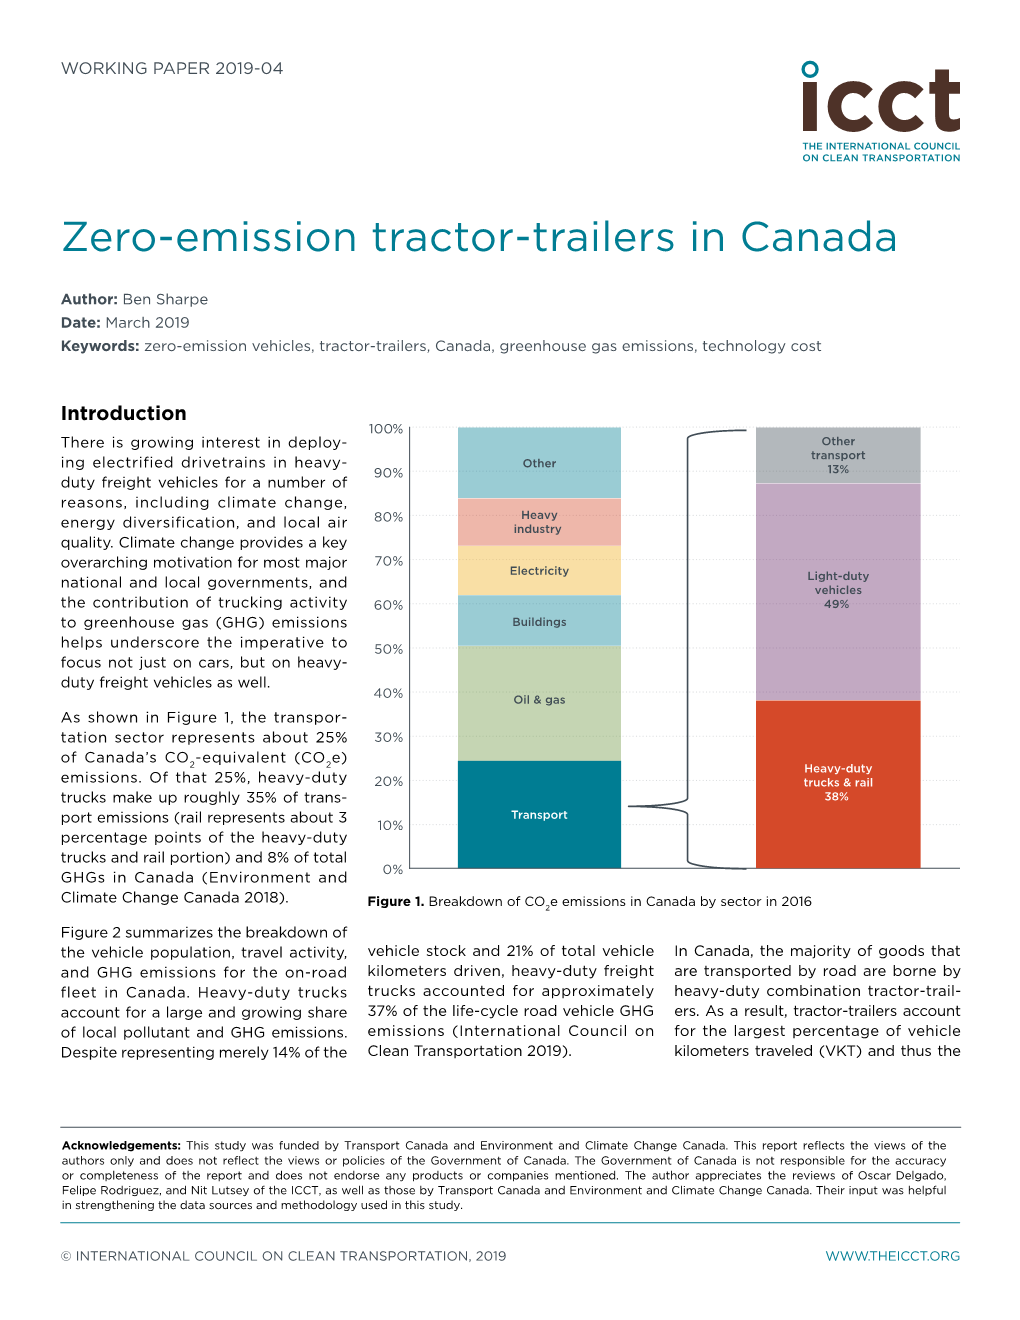 Zero-Emission Tractor-Trailers in Canada